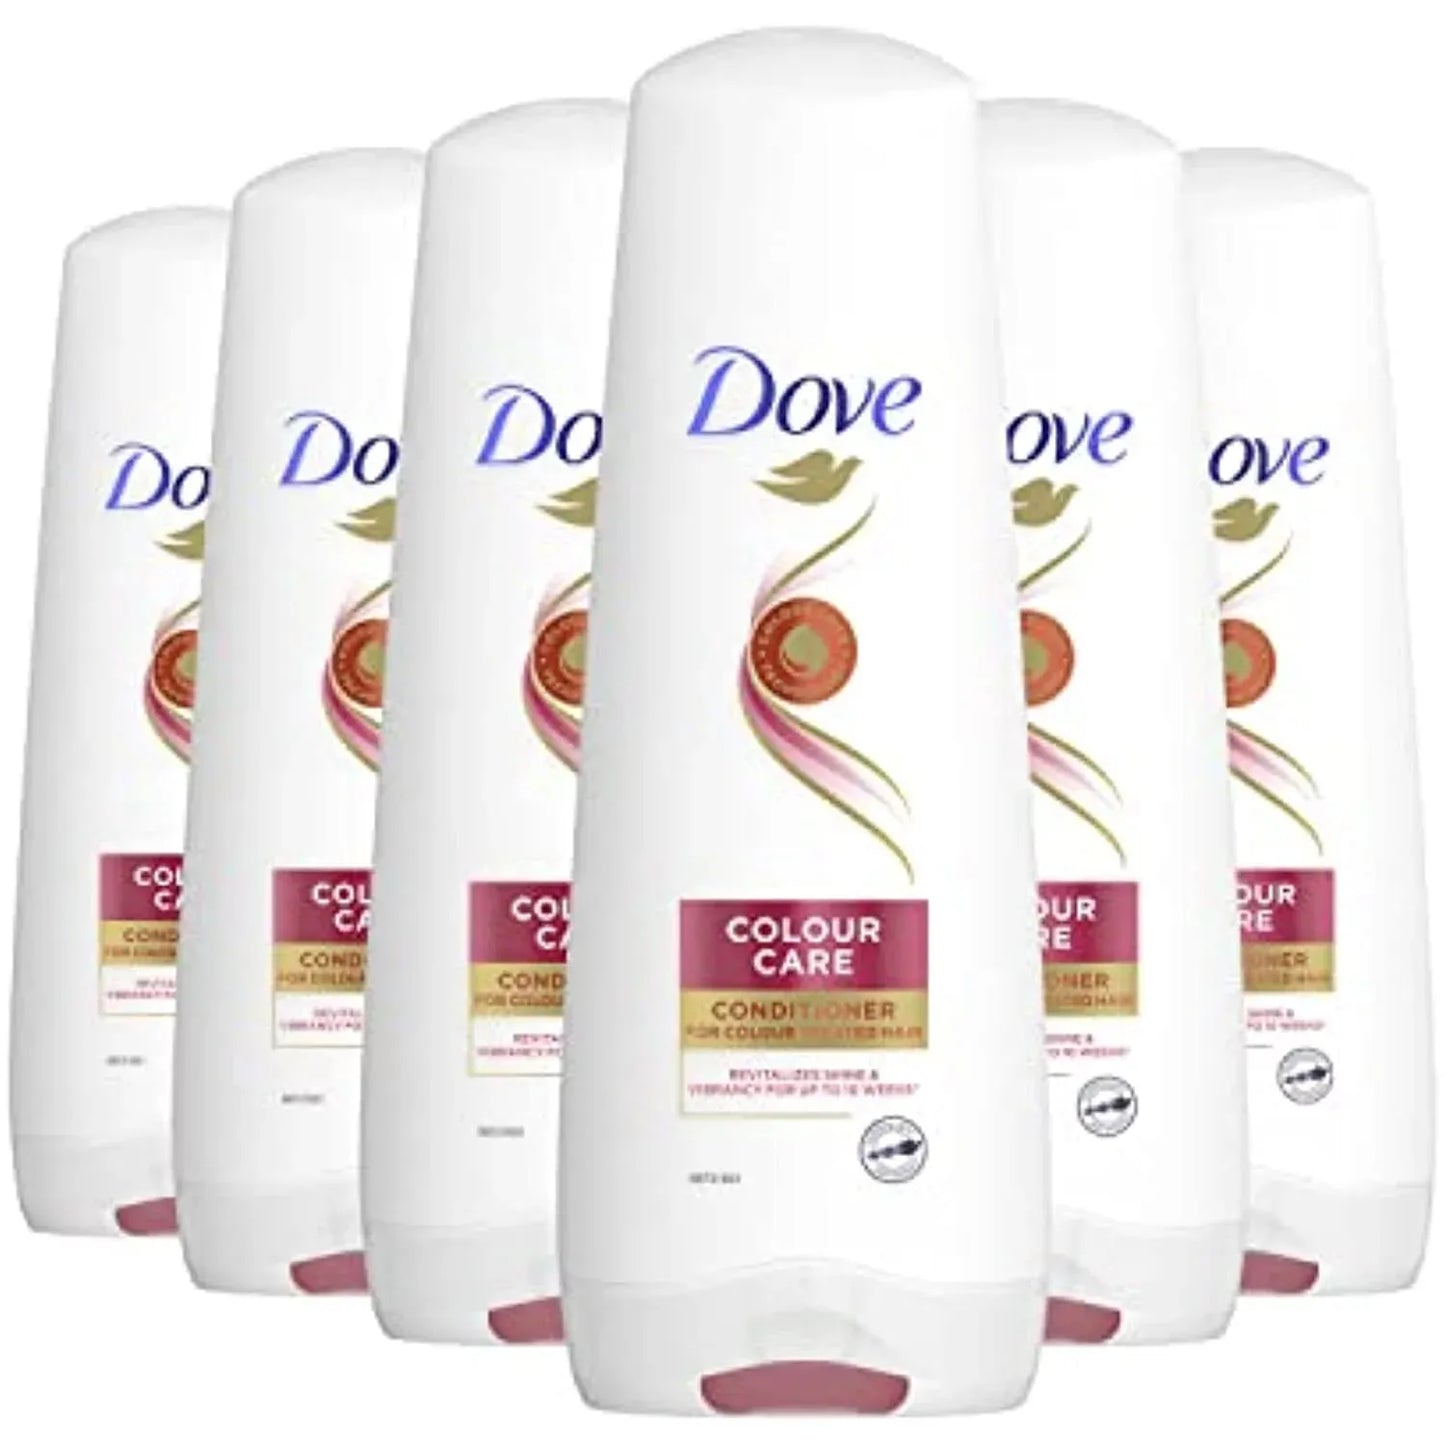 6x Dove Colour Care Conditioner 200ml